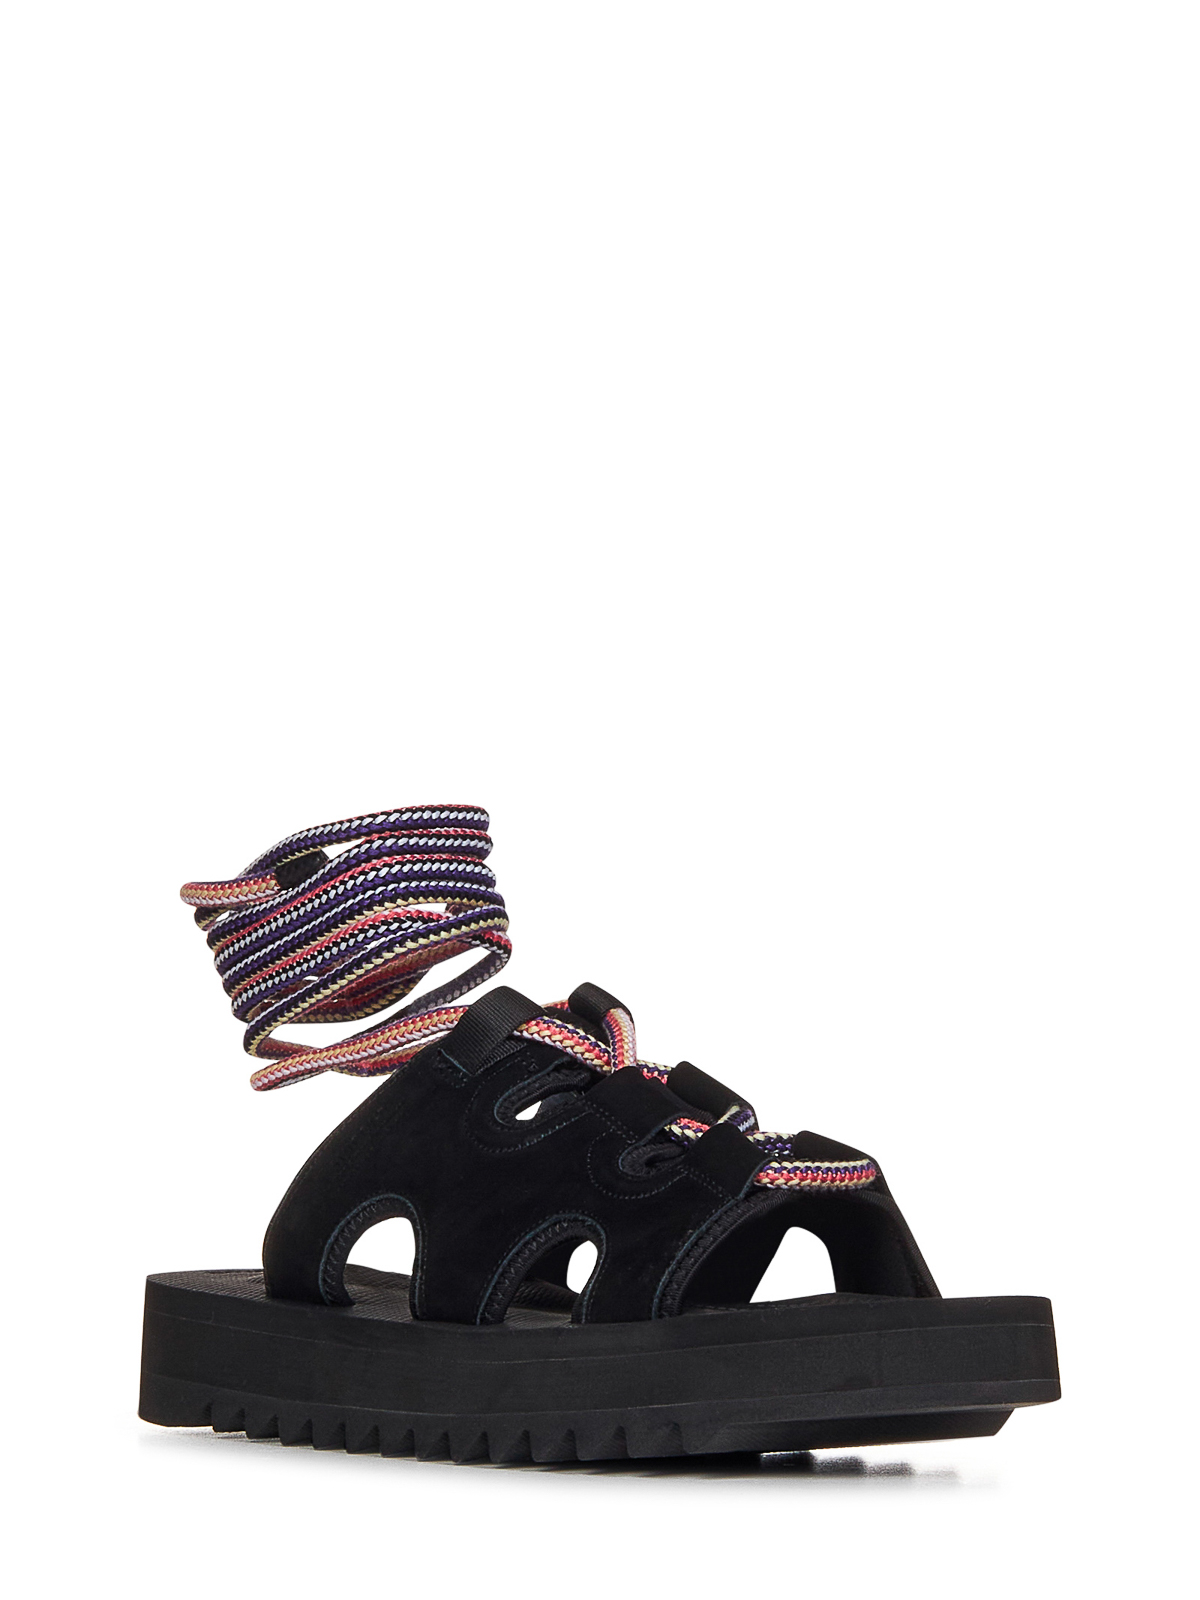 Shop Suicoke Black Suede Sandals